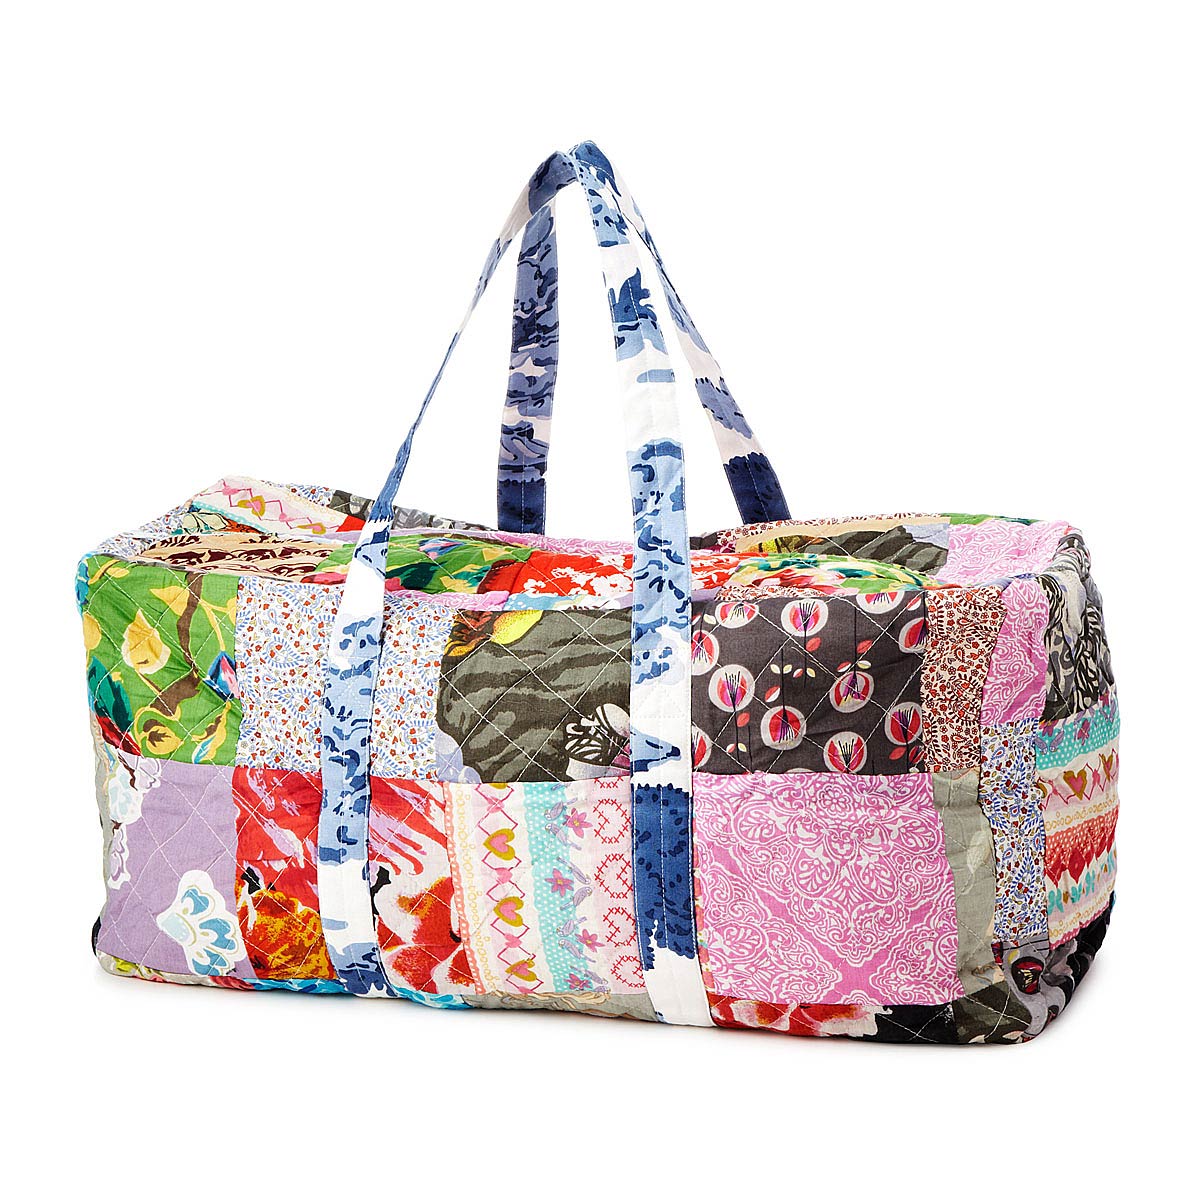 Upcycled Cotton Sari Duffle Bag | patchwork recycled sari bag